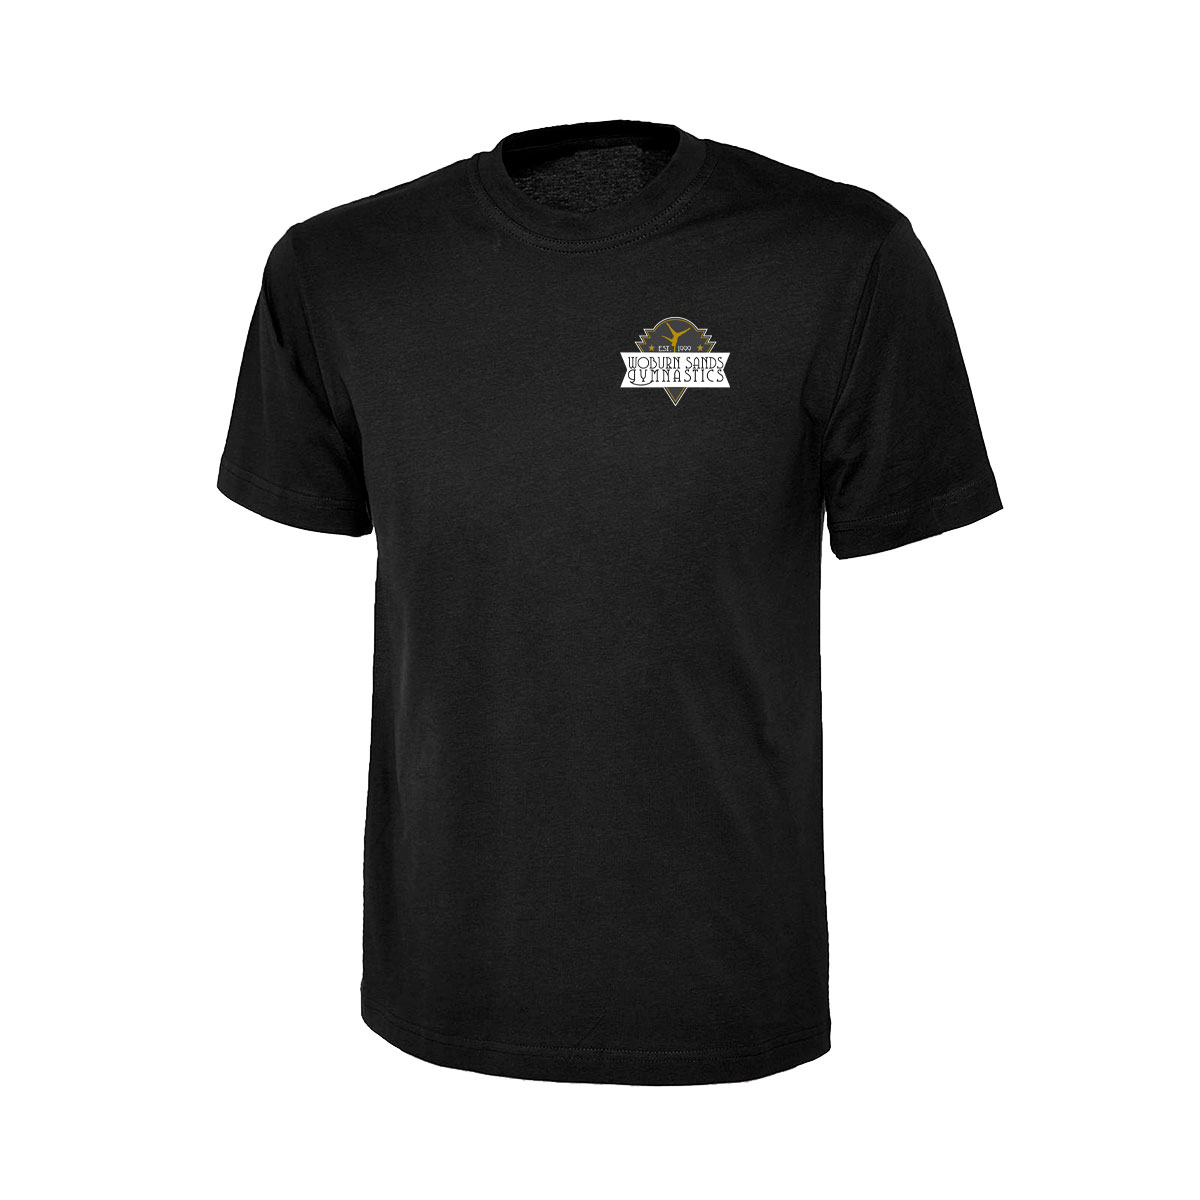 WSG Boys T-shirt – Woburn Sands Gym